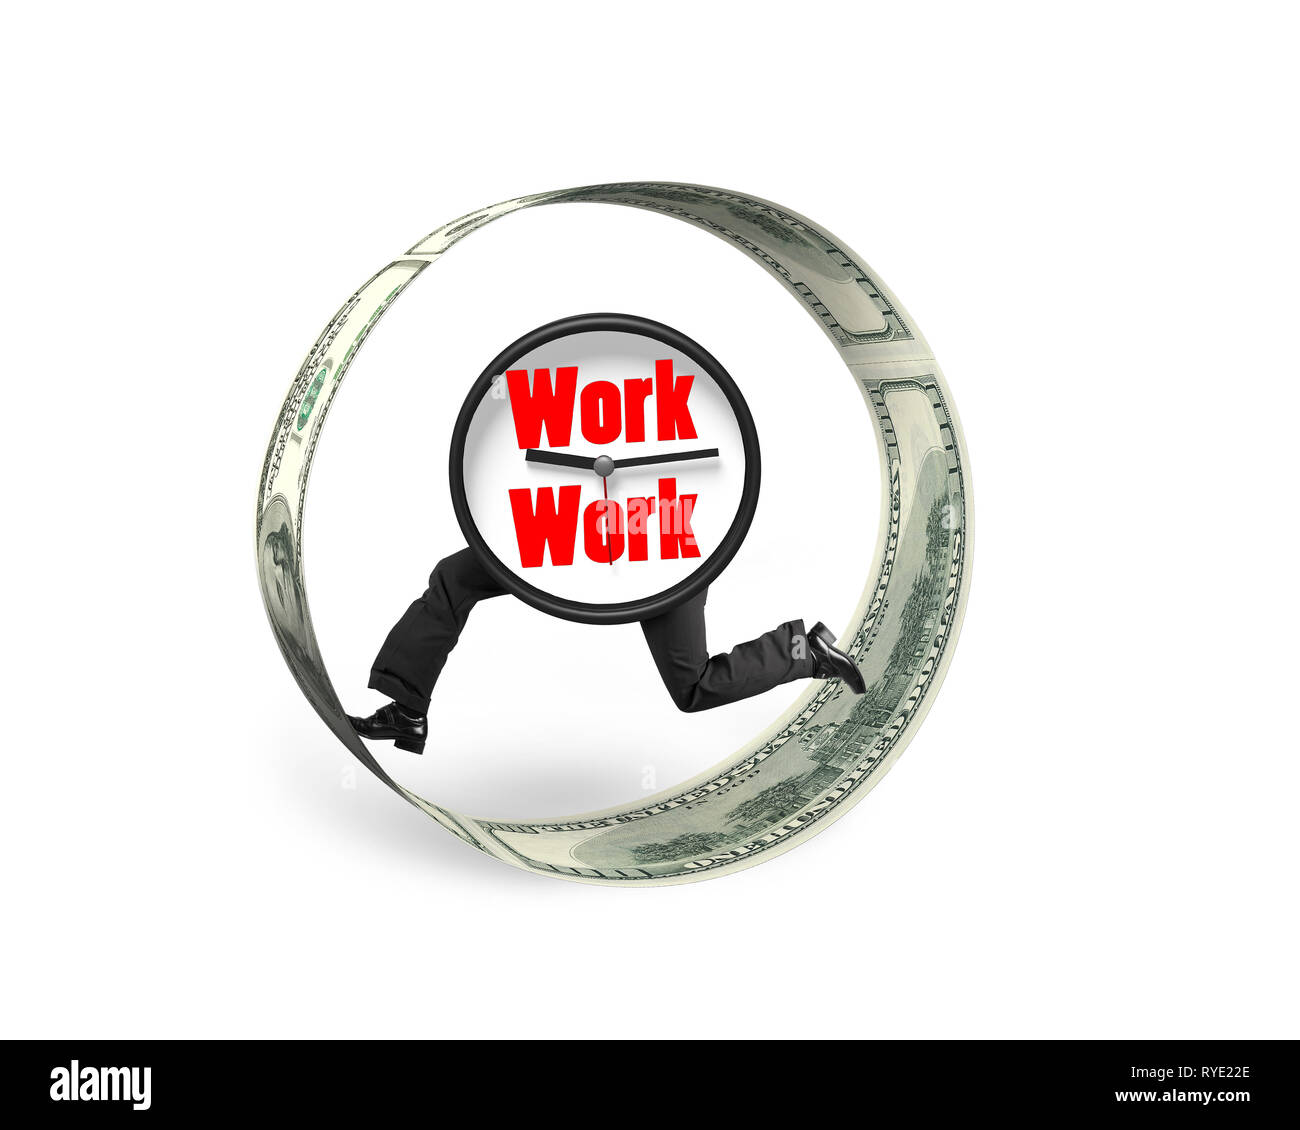 Uhr mit menschlichen Beinen und Arbeit Wörter auf Zifferblatt, laufen in Geld Kreis, auf weißem Hintergrund. Stockfoto